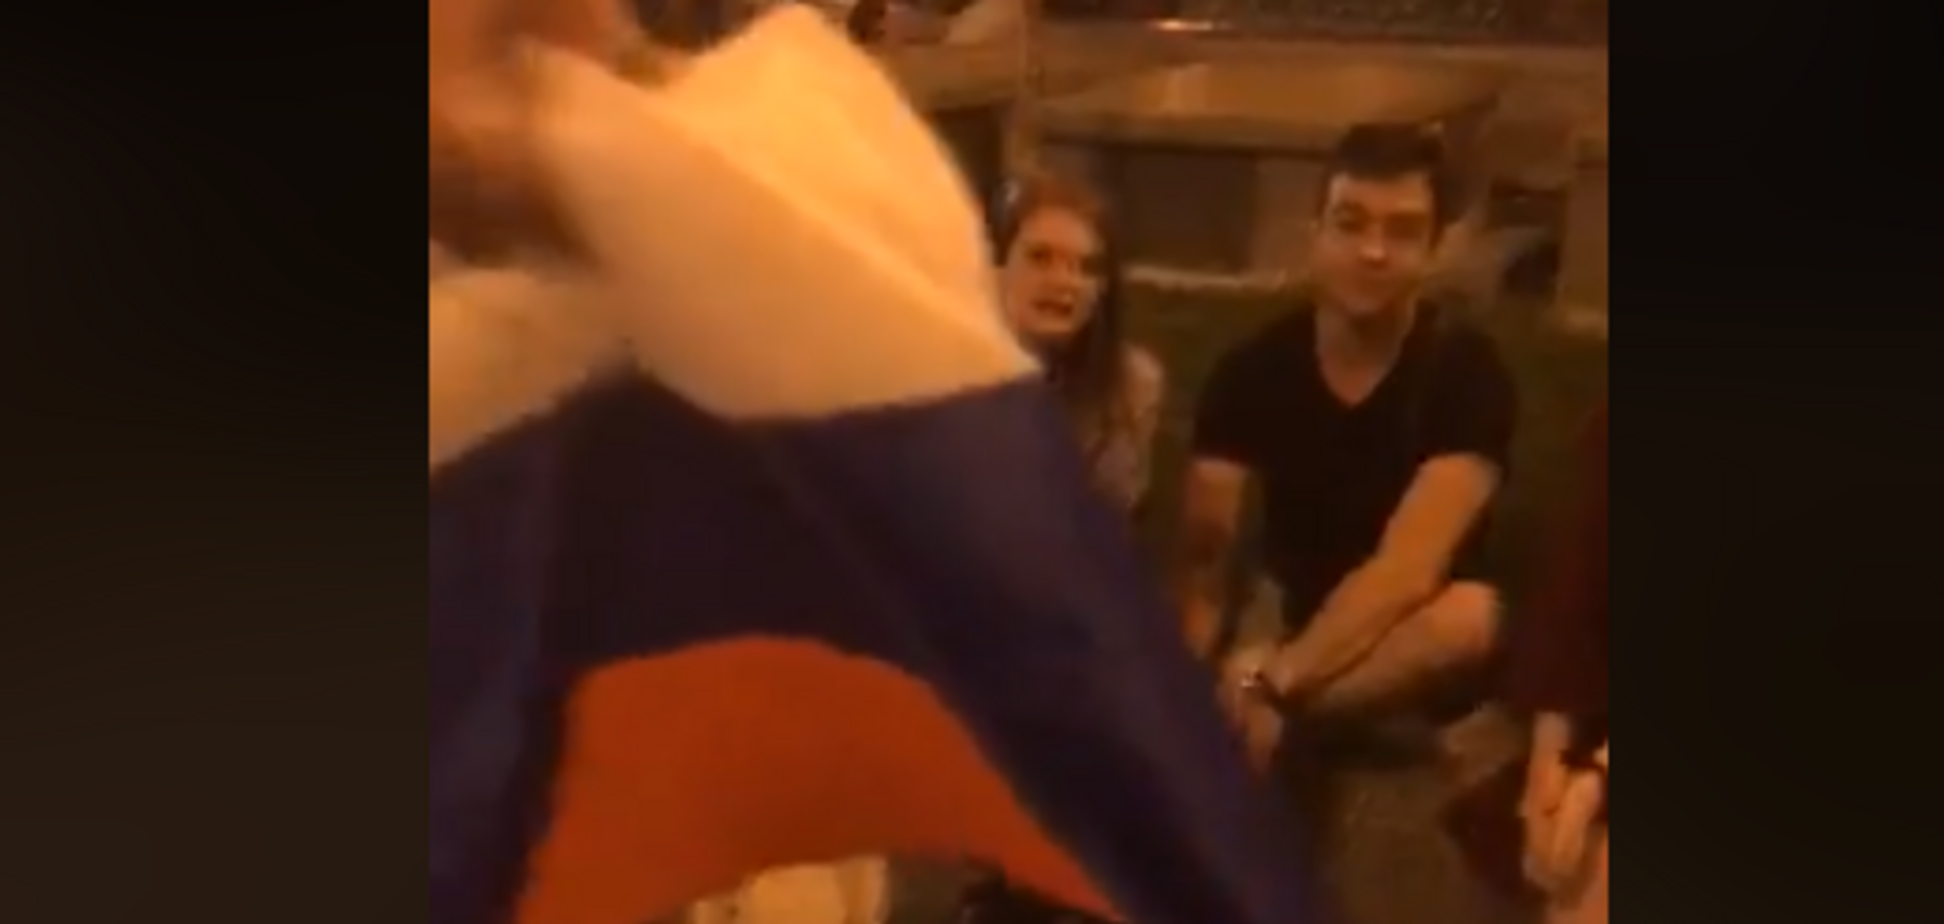  'Закопаю с триколором!' В центре Киева устроили потасовку из-за флага России